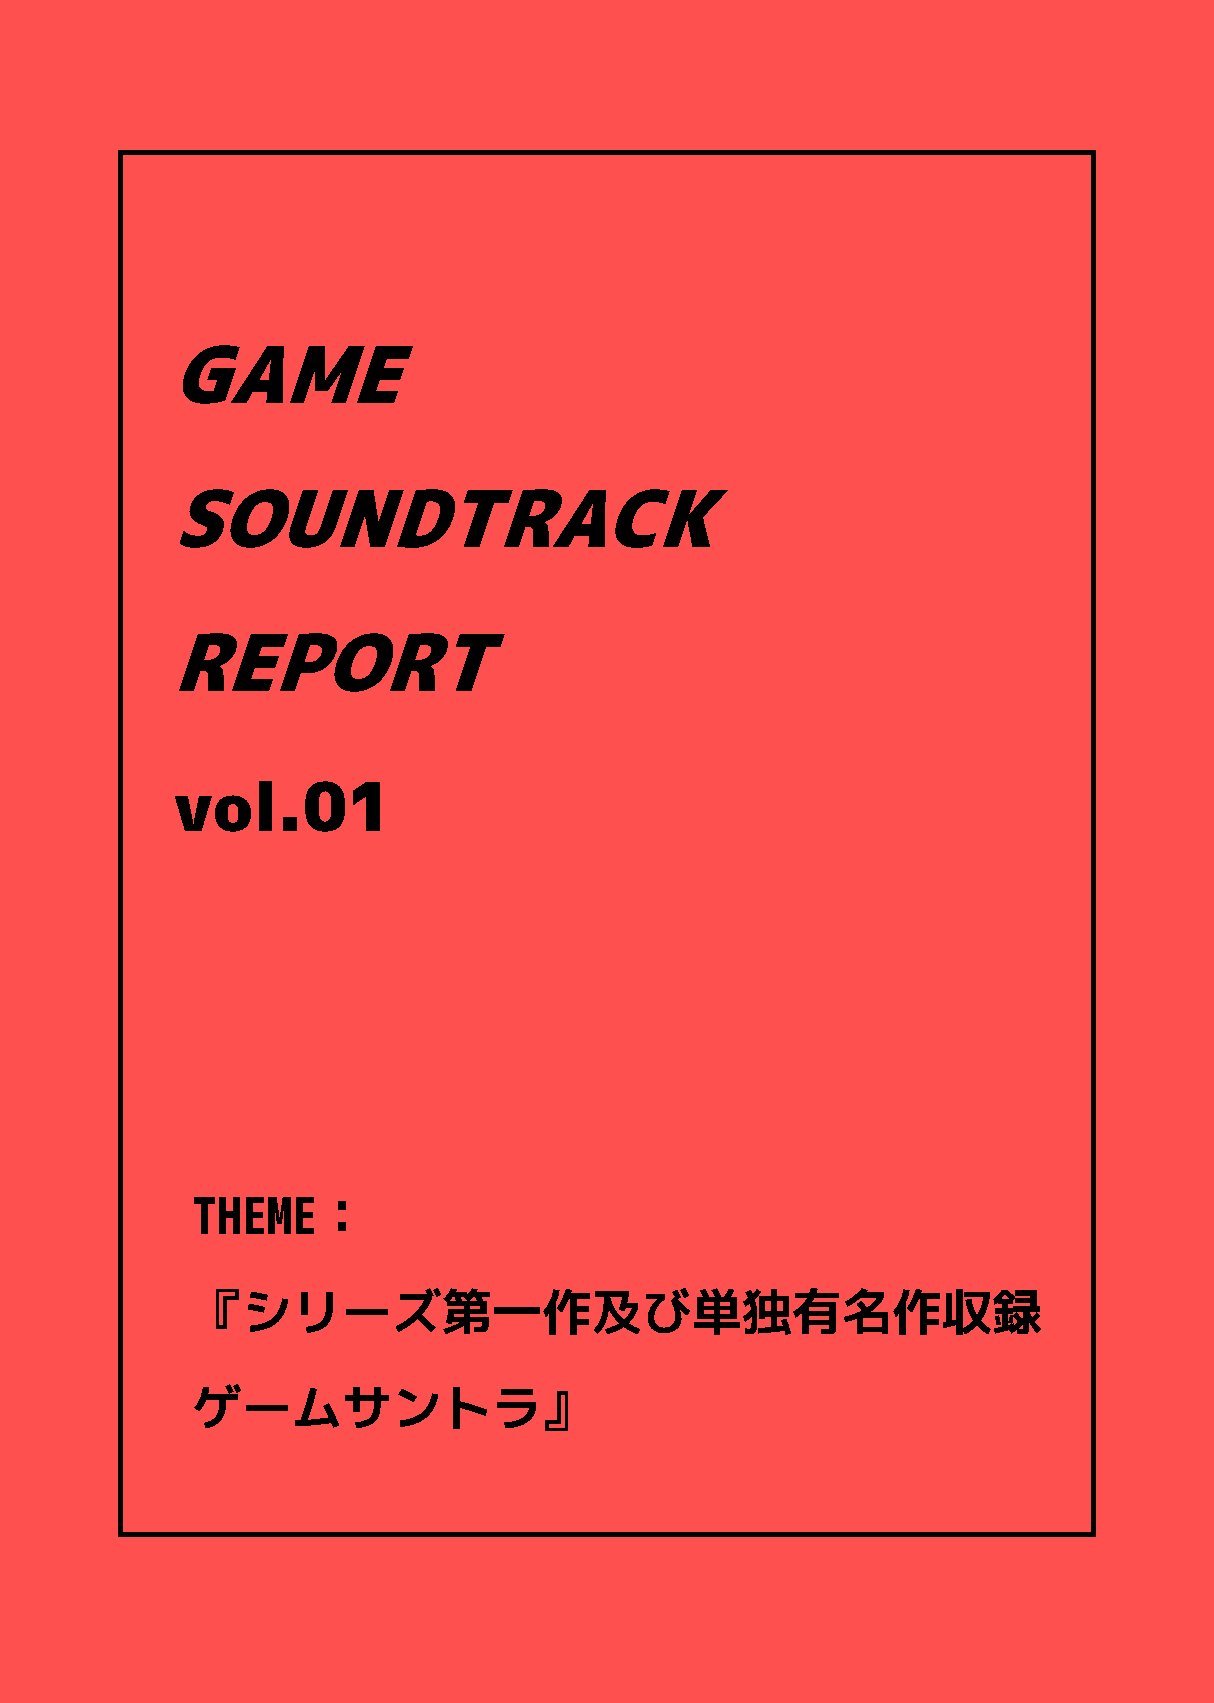 GAME SOUNDTRACK REPORT Vol.1